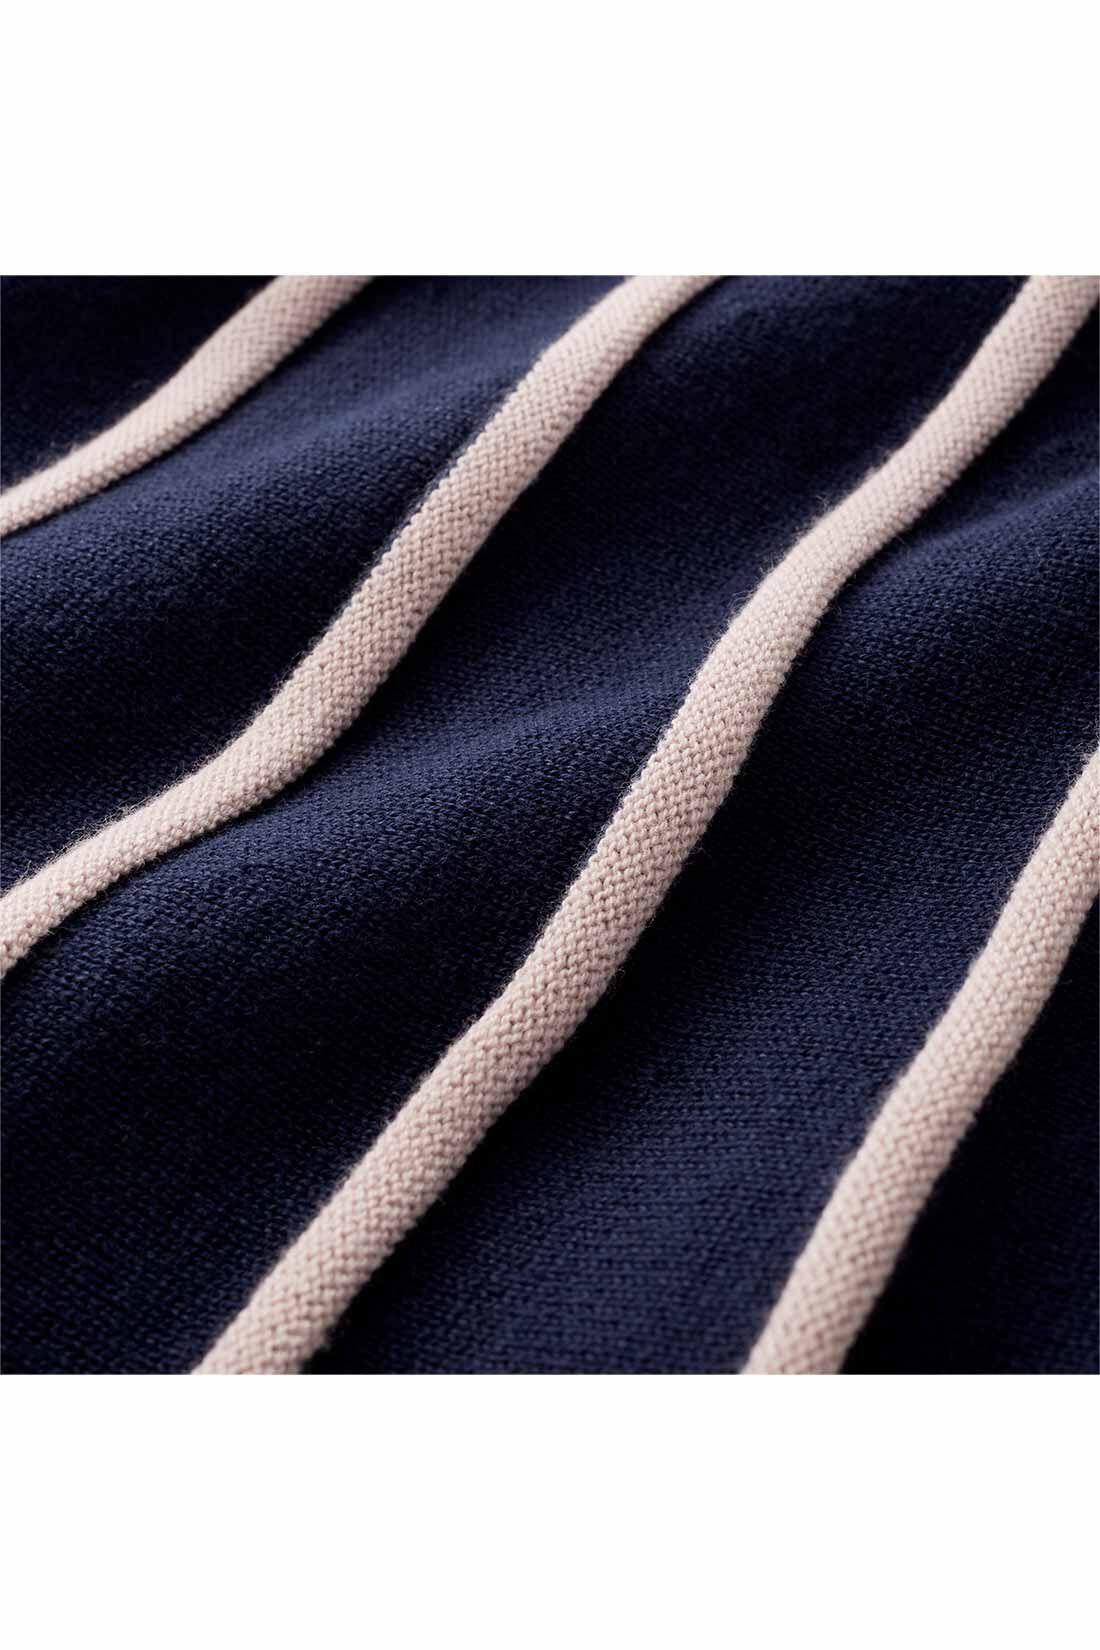 Real Stock|IEDIT[イディット]　ストライプ編み柄のニットフレアースカート〈ネイビー〉|しわを気にせずさらりとはける、ほどよい厚みのコットンアクリル素材。